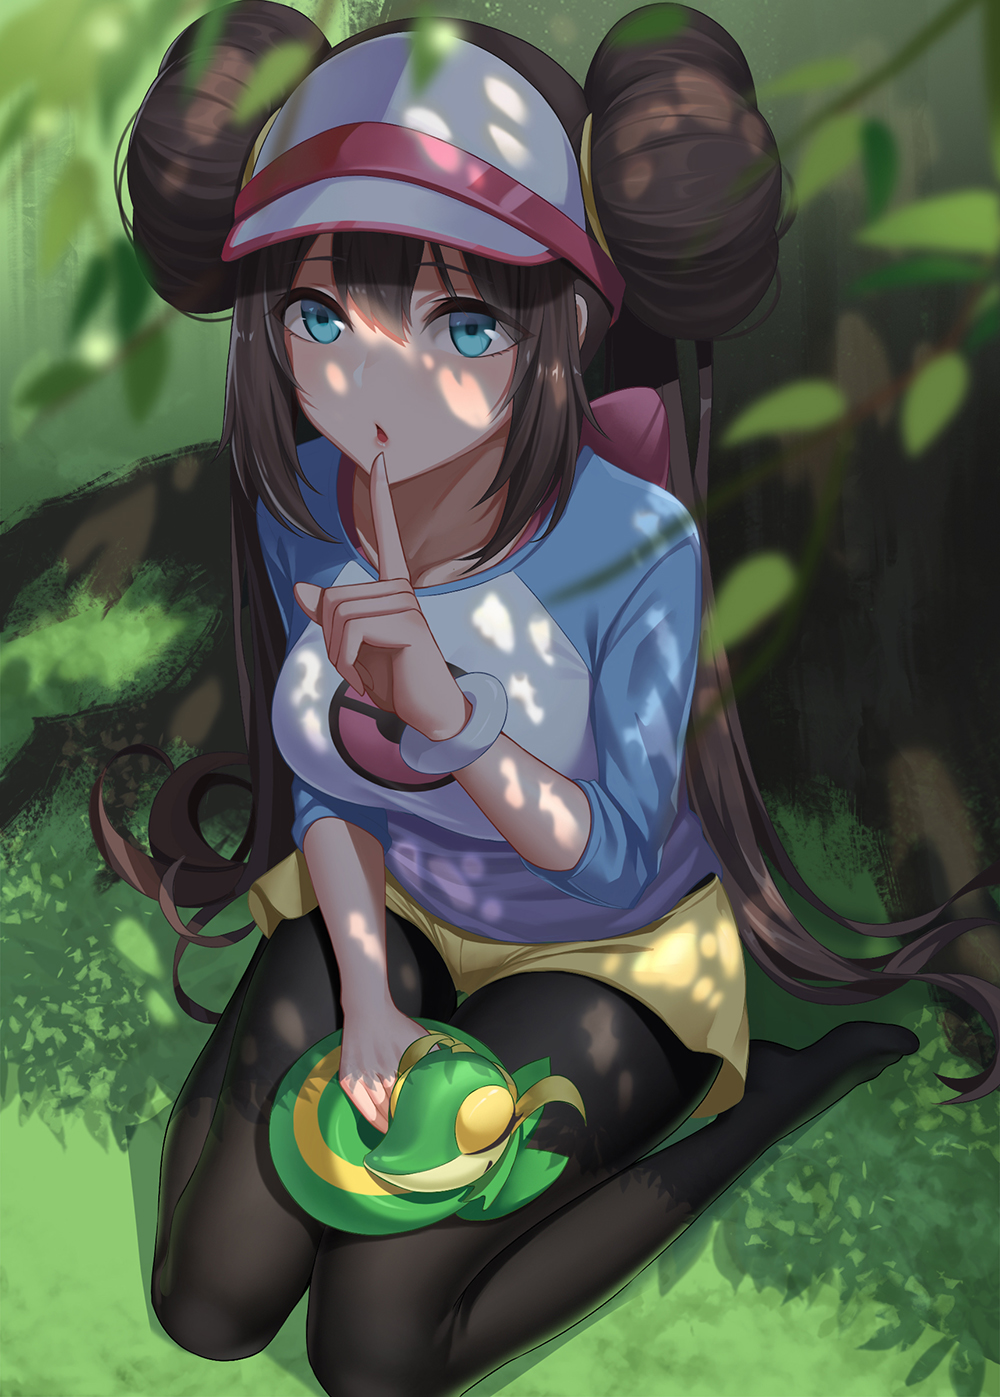 Anime 1000x1397 anime anime girls digital art artwork 2D portrait display Kurosara Pokémon Rosa (Pokémon) brunette long hair blue eyes kneeling